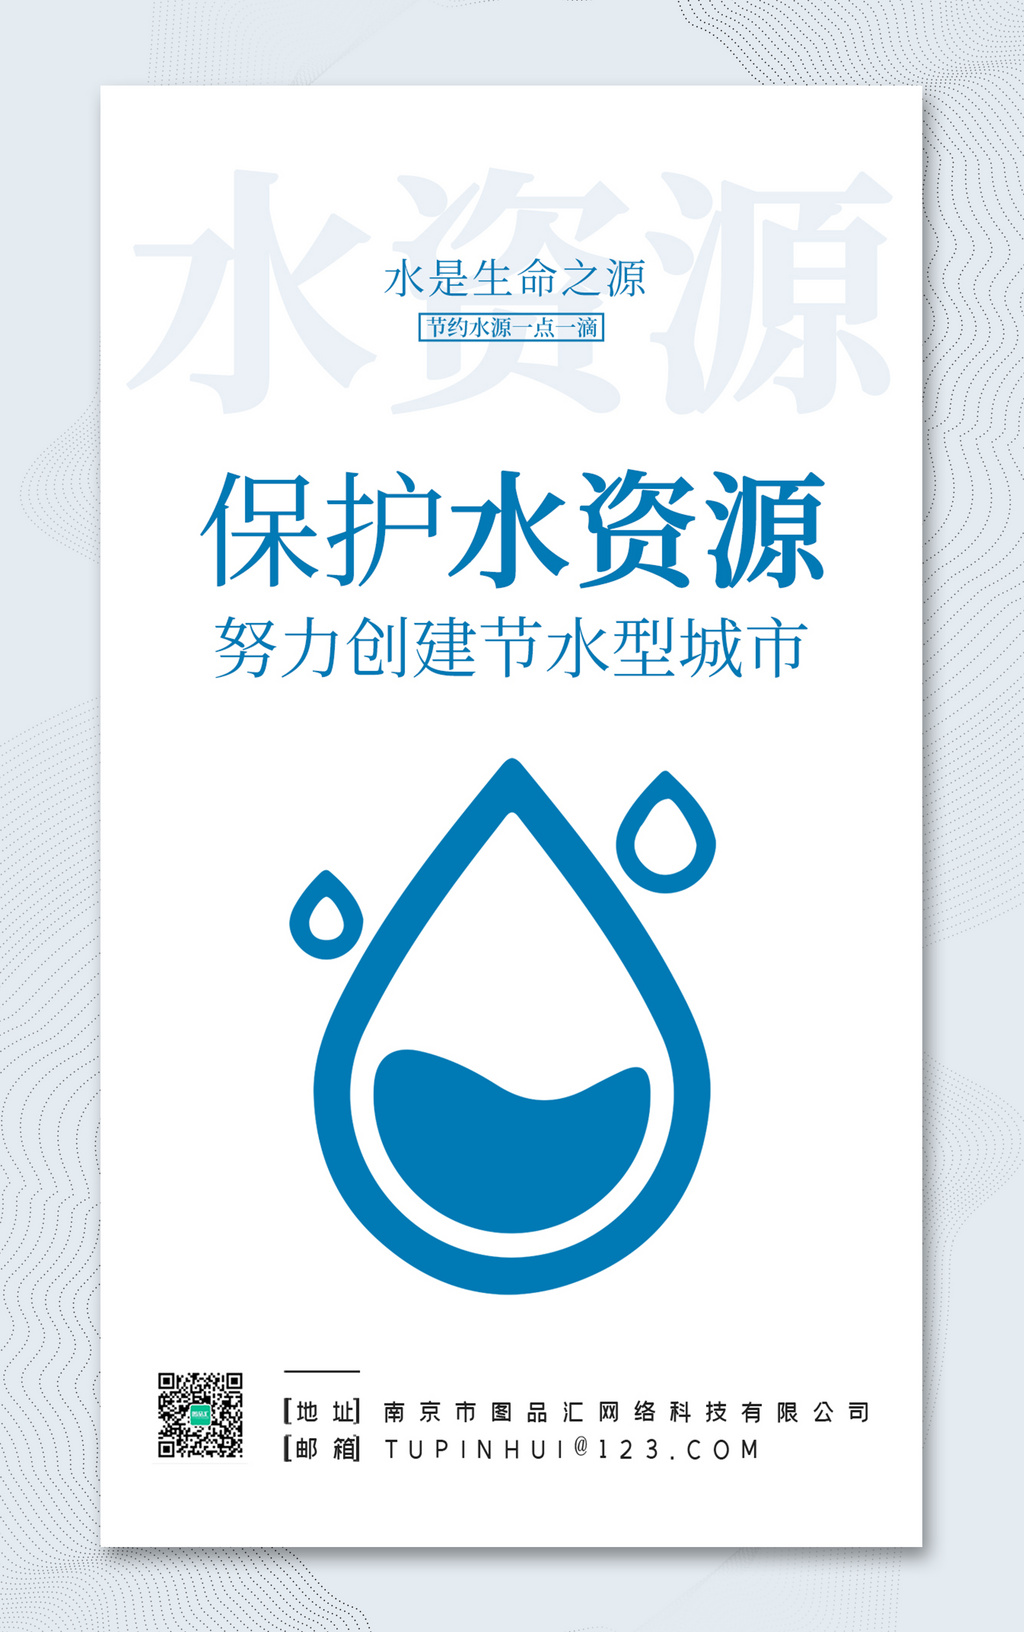 简约保护水资源公益宣传海报